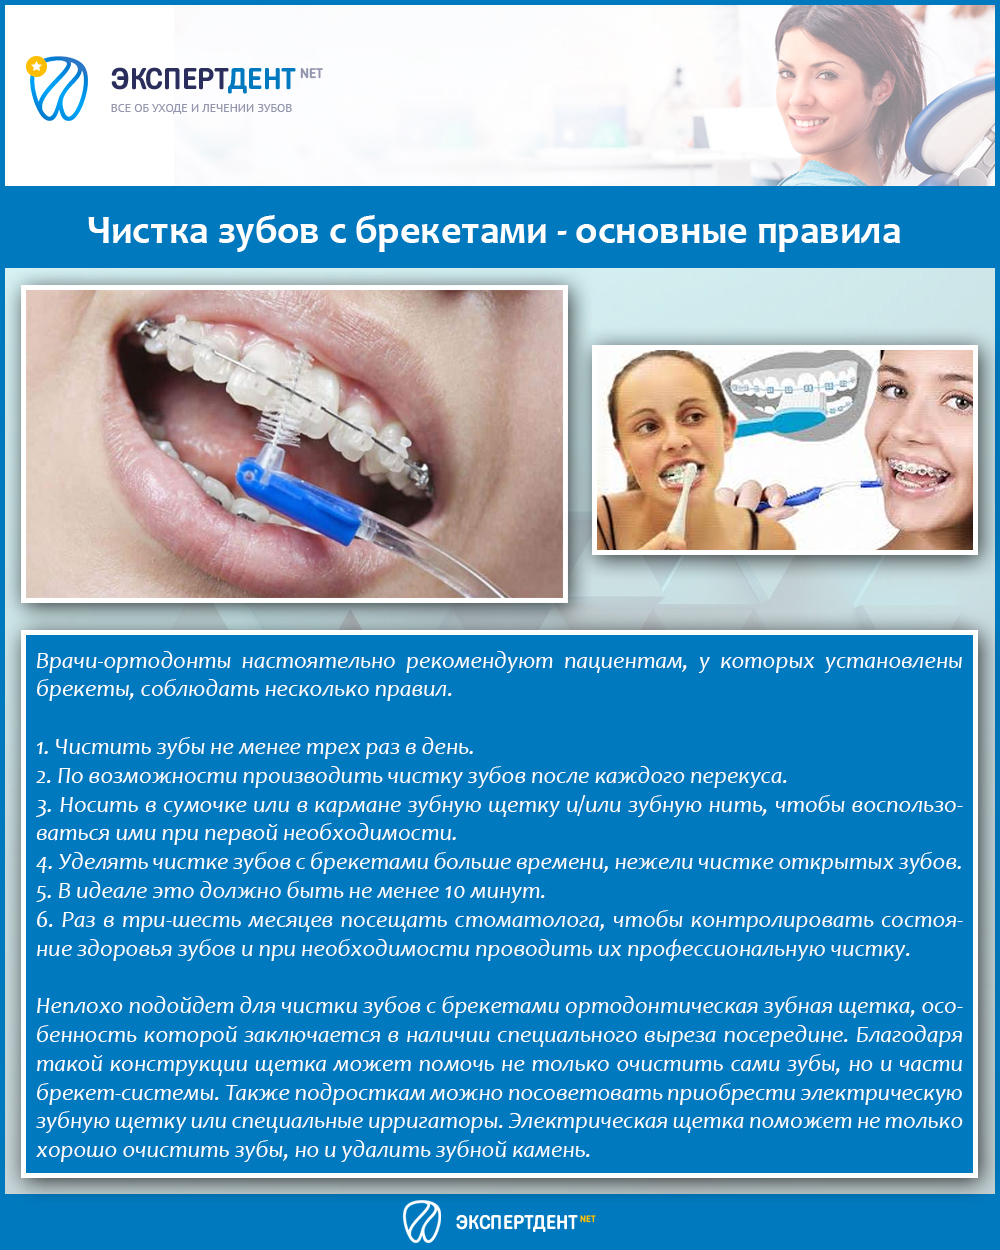 Сколько чистка зубов по времени у стоматолога. Профессиональная чистка зубов. Чистка зубов с брекет системой. Памятка пациенту с брекет системой. Методы чистки зубов с брекет системой.